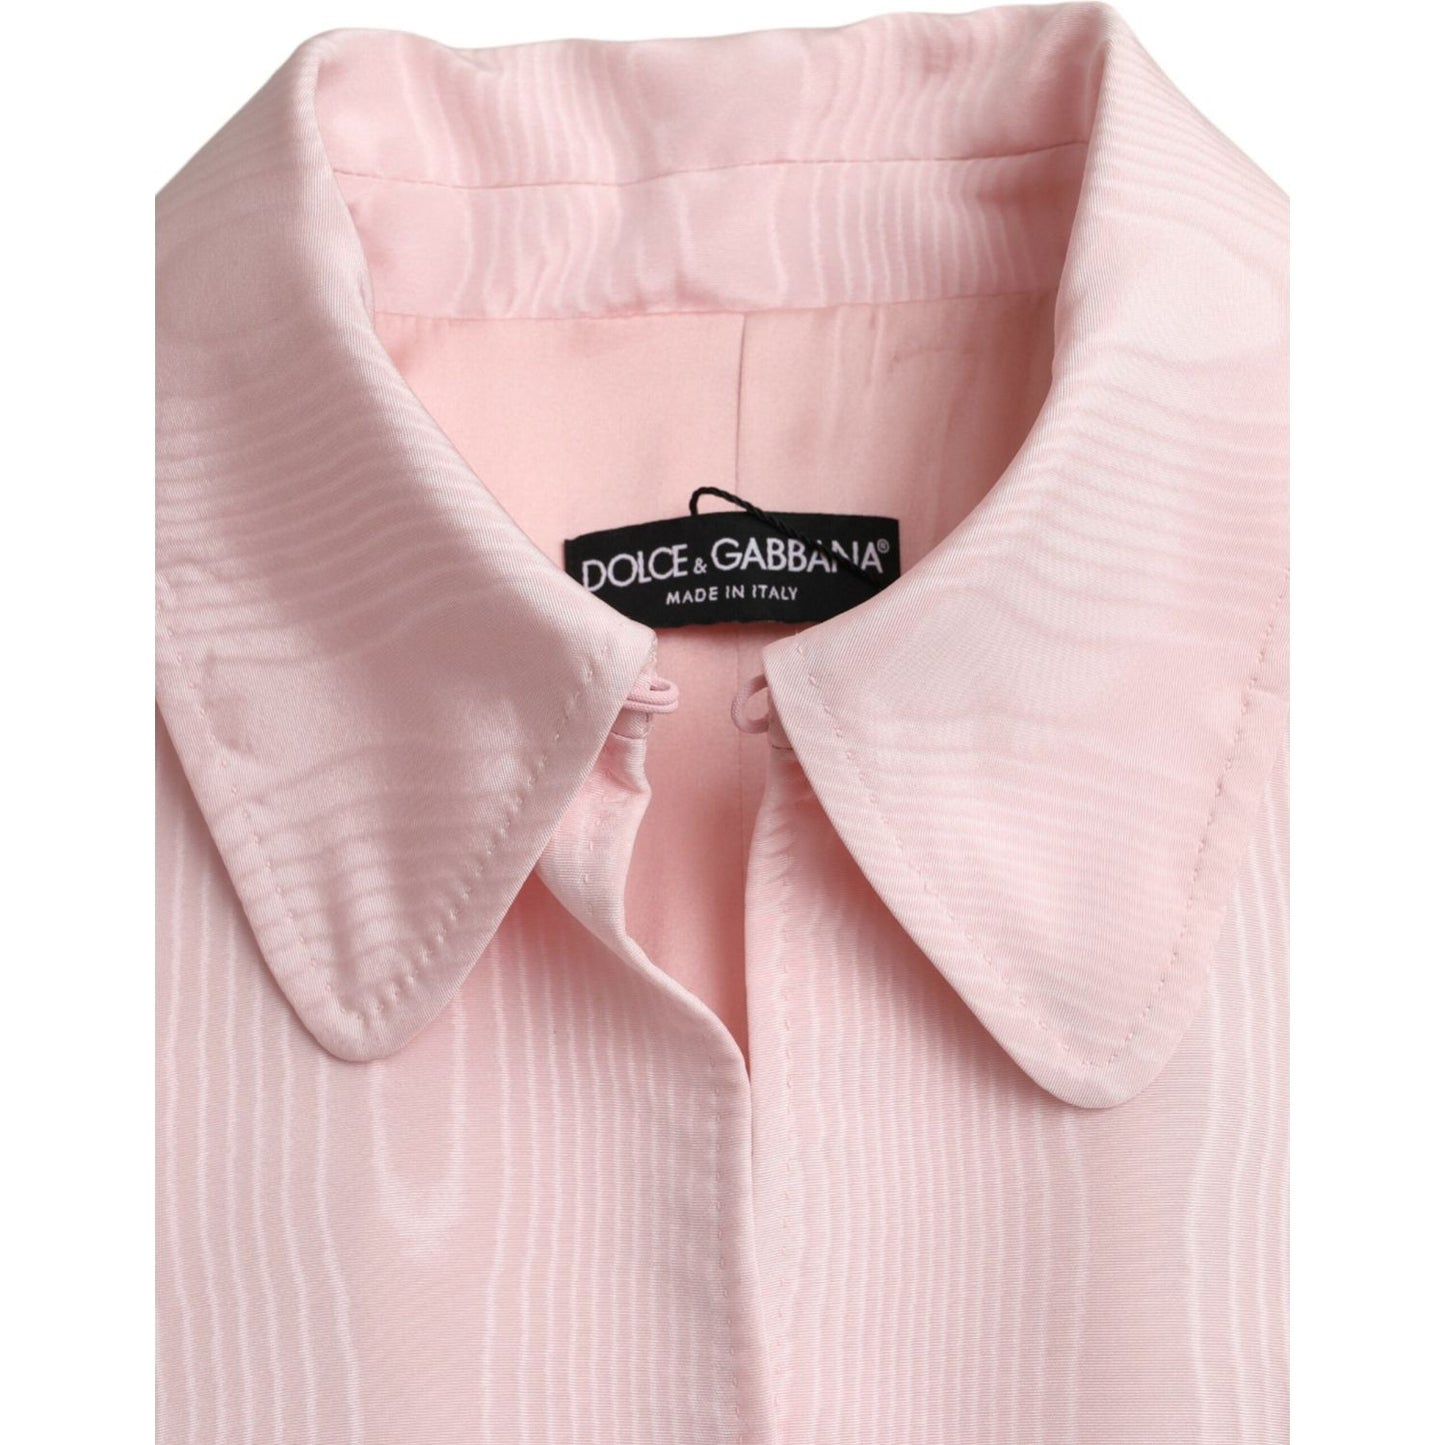 Dolce & GabbanaLight Pink Silk Long Maxi Cape Coat JacketMcRichard Designer Brands£3469.00